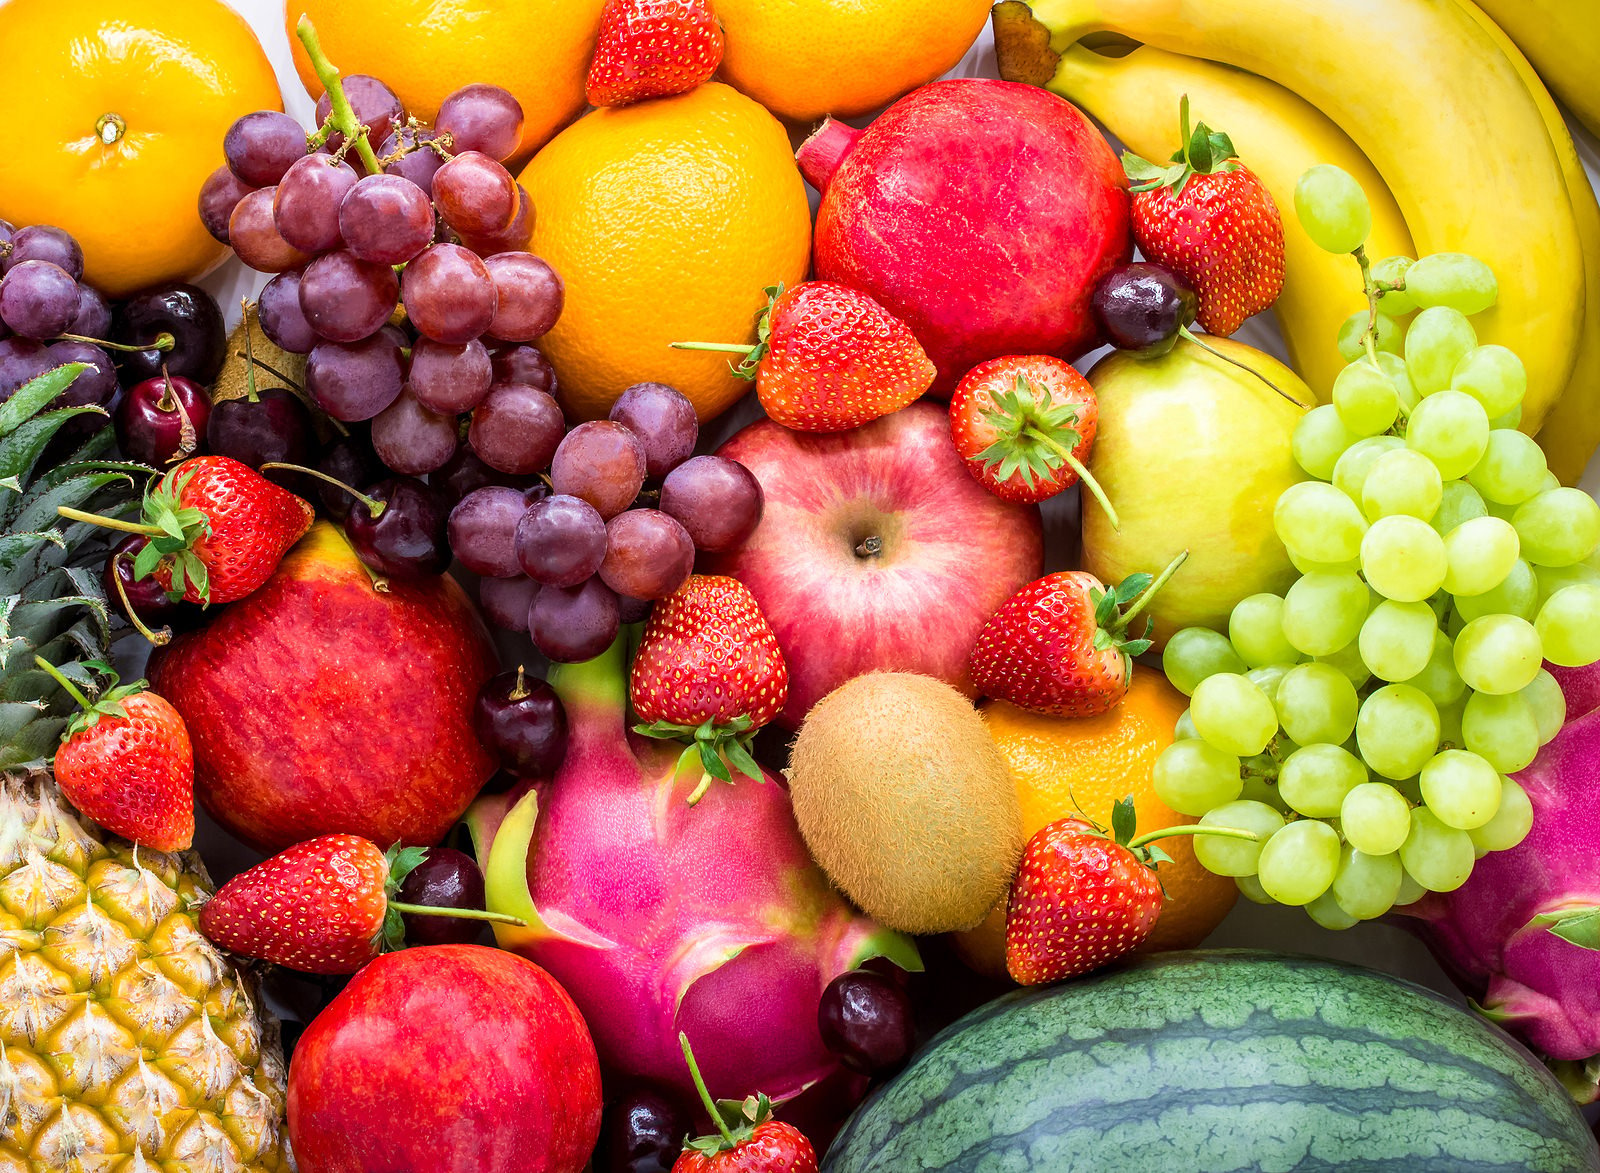 health benefits of fruit